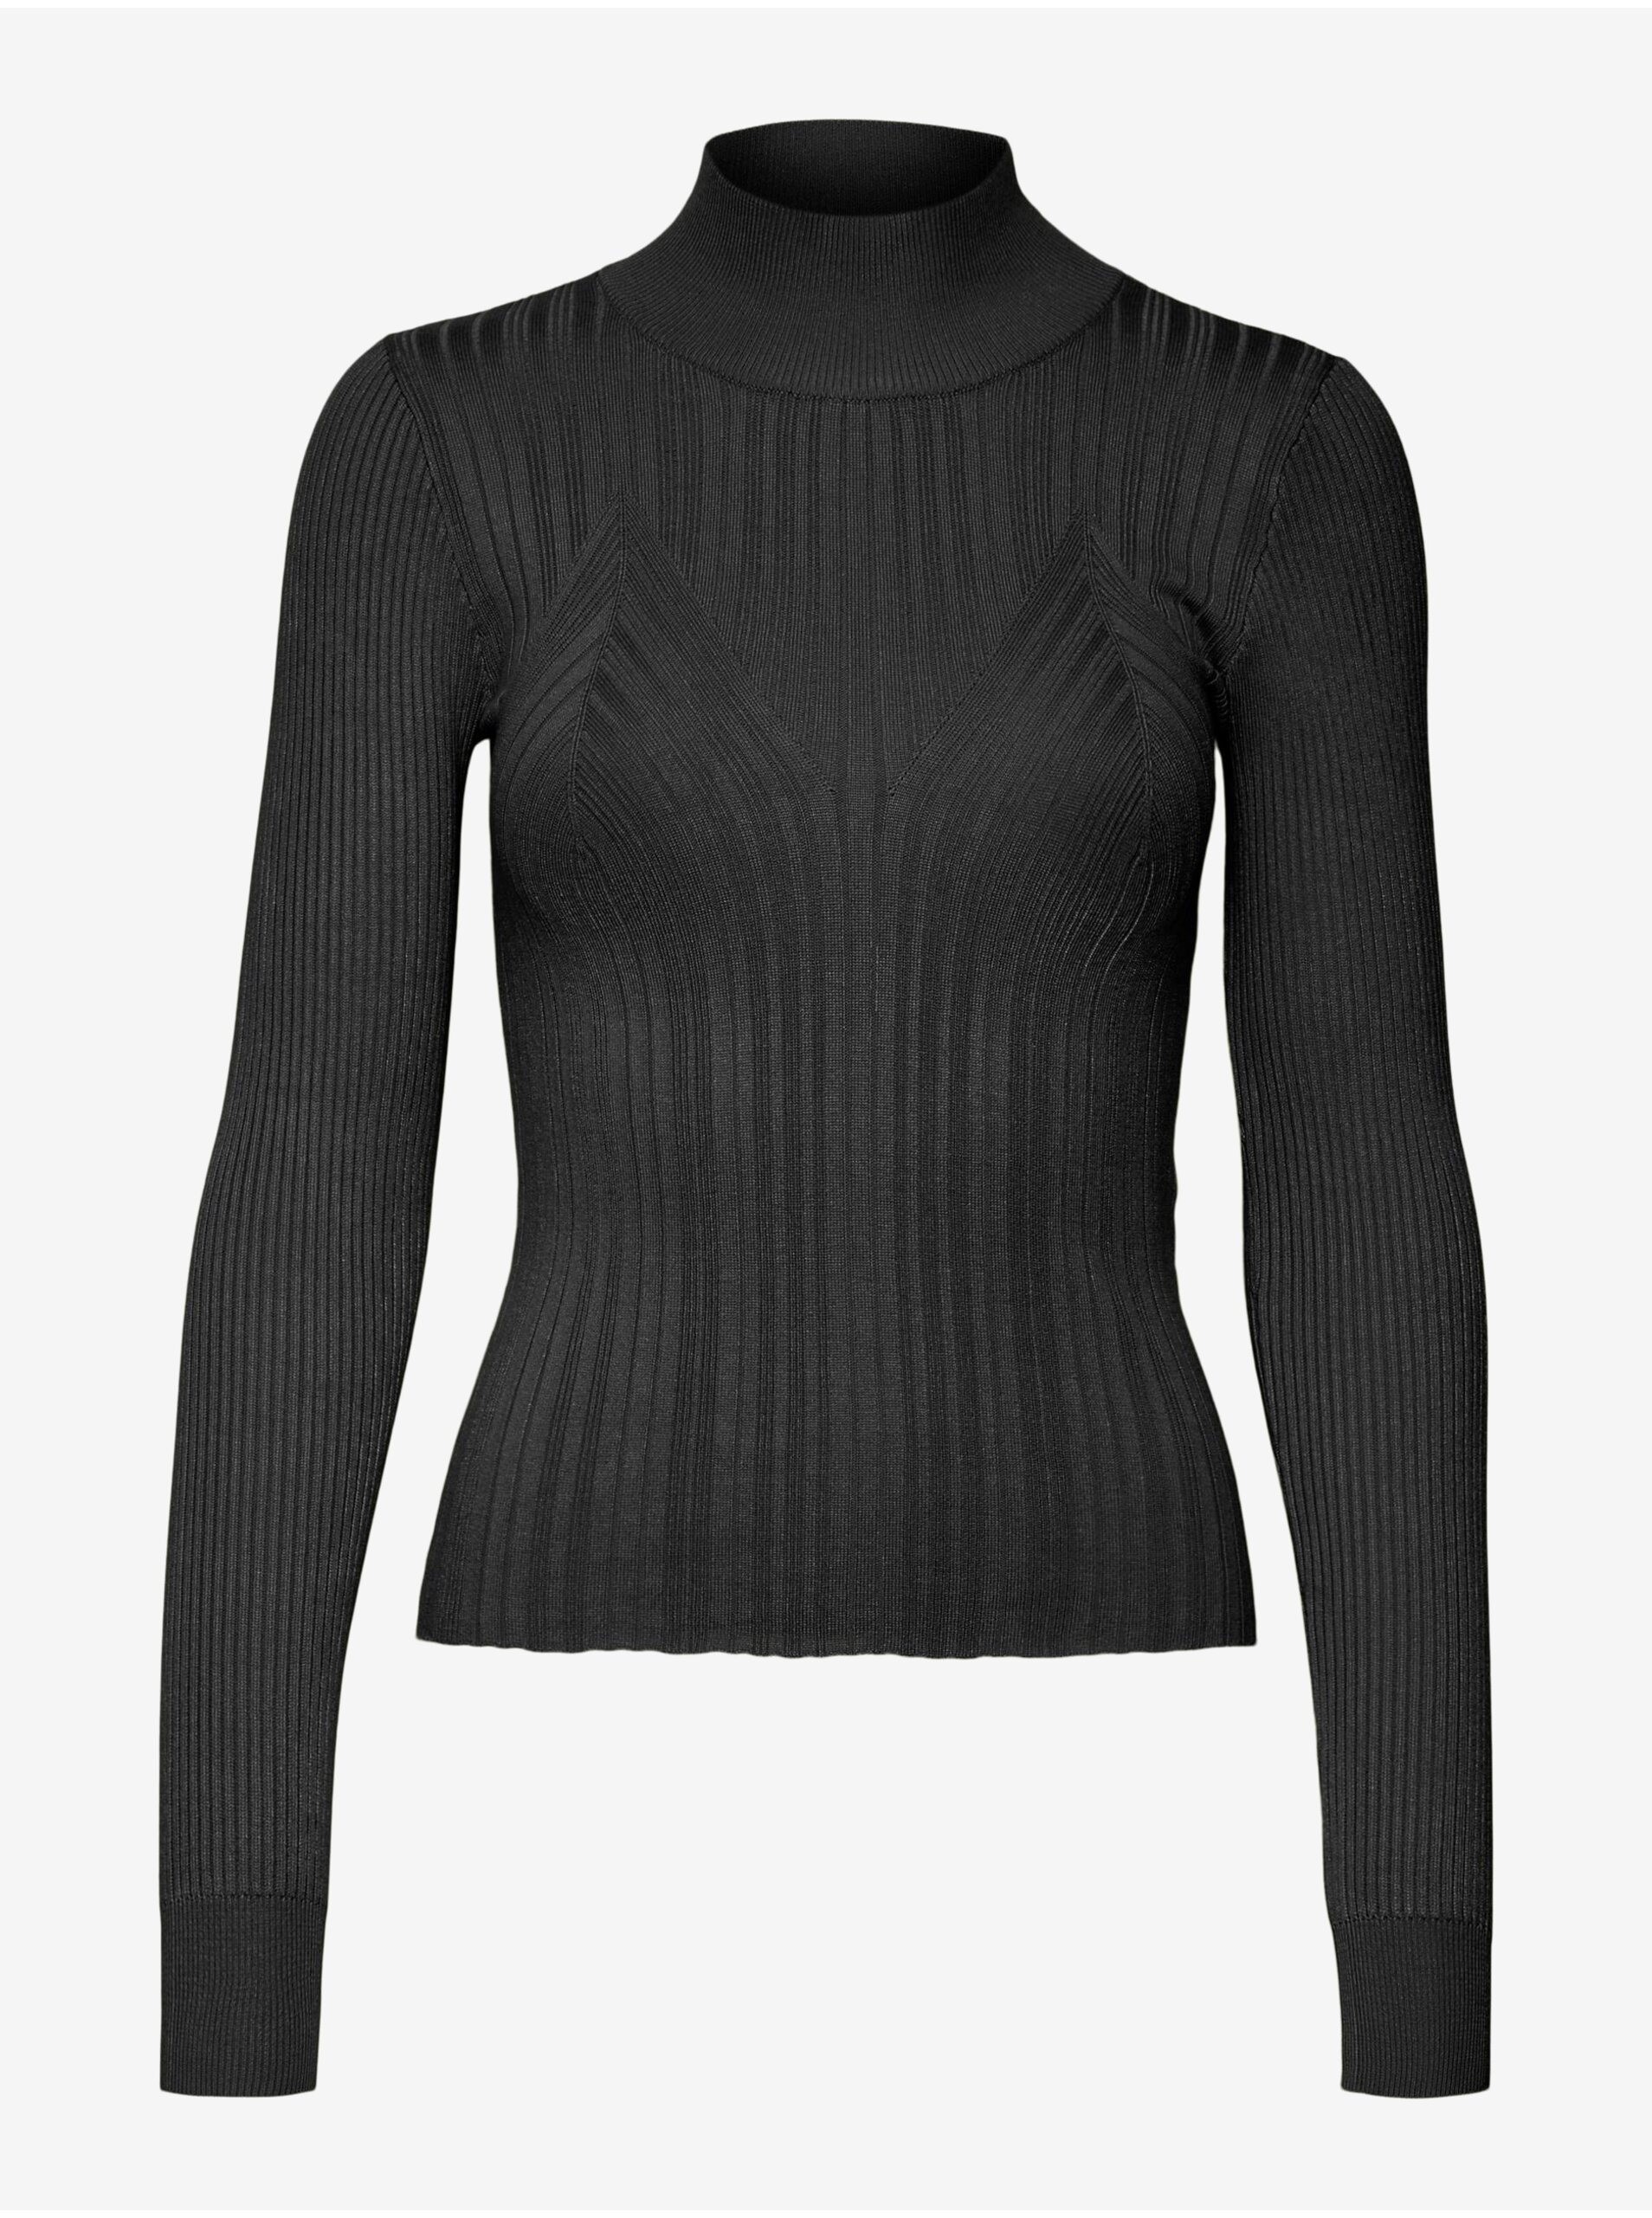 Black women's sweater VERO MODA Sally - Women